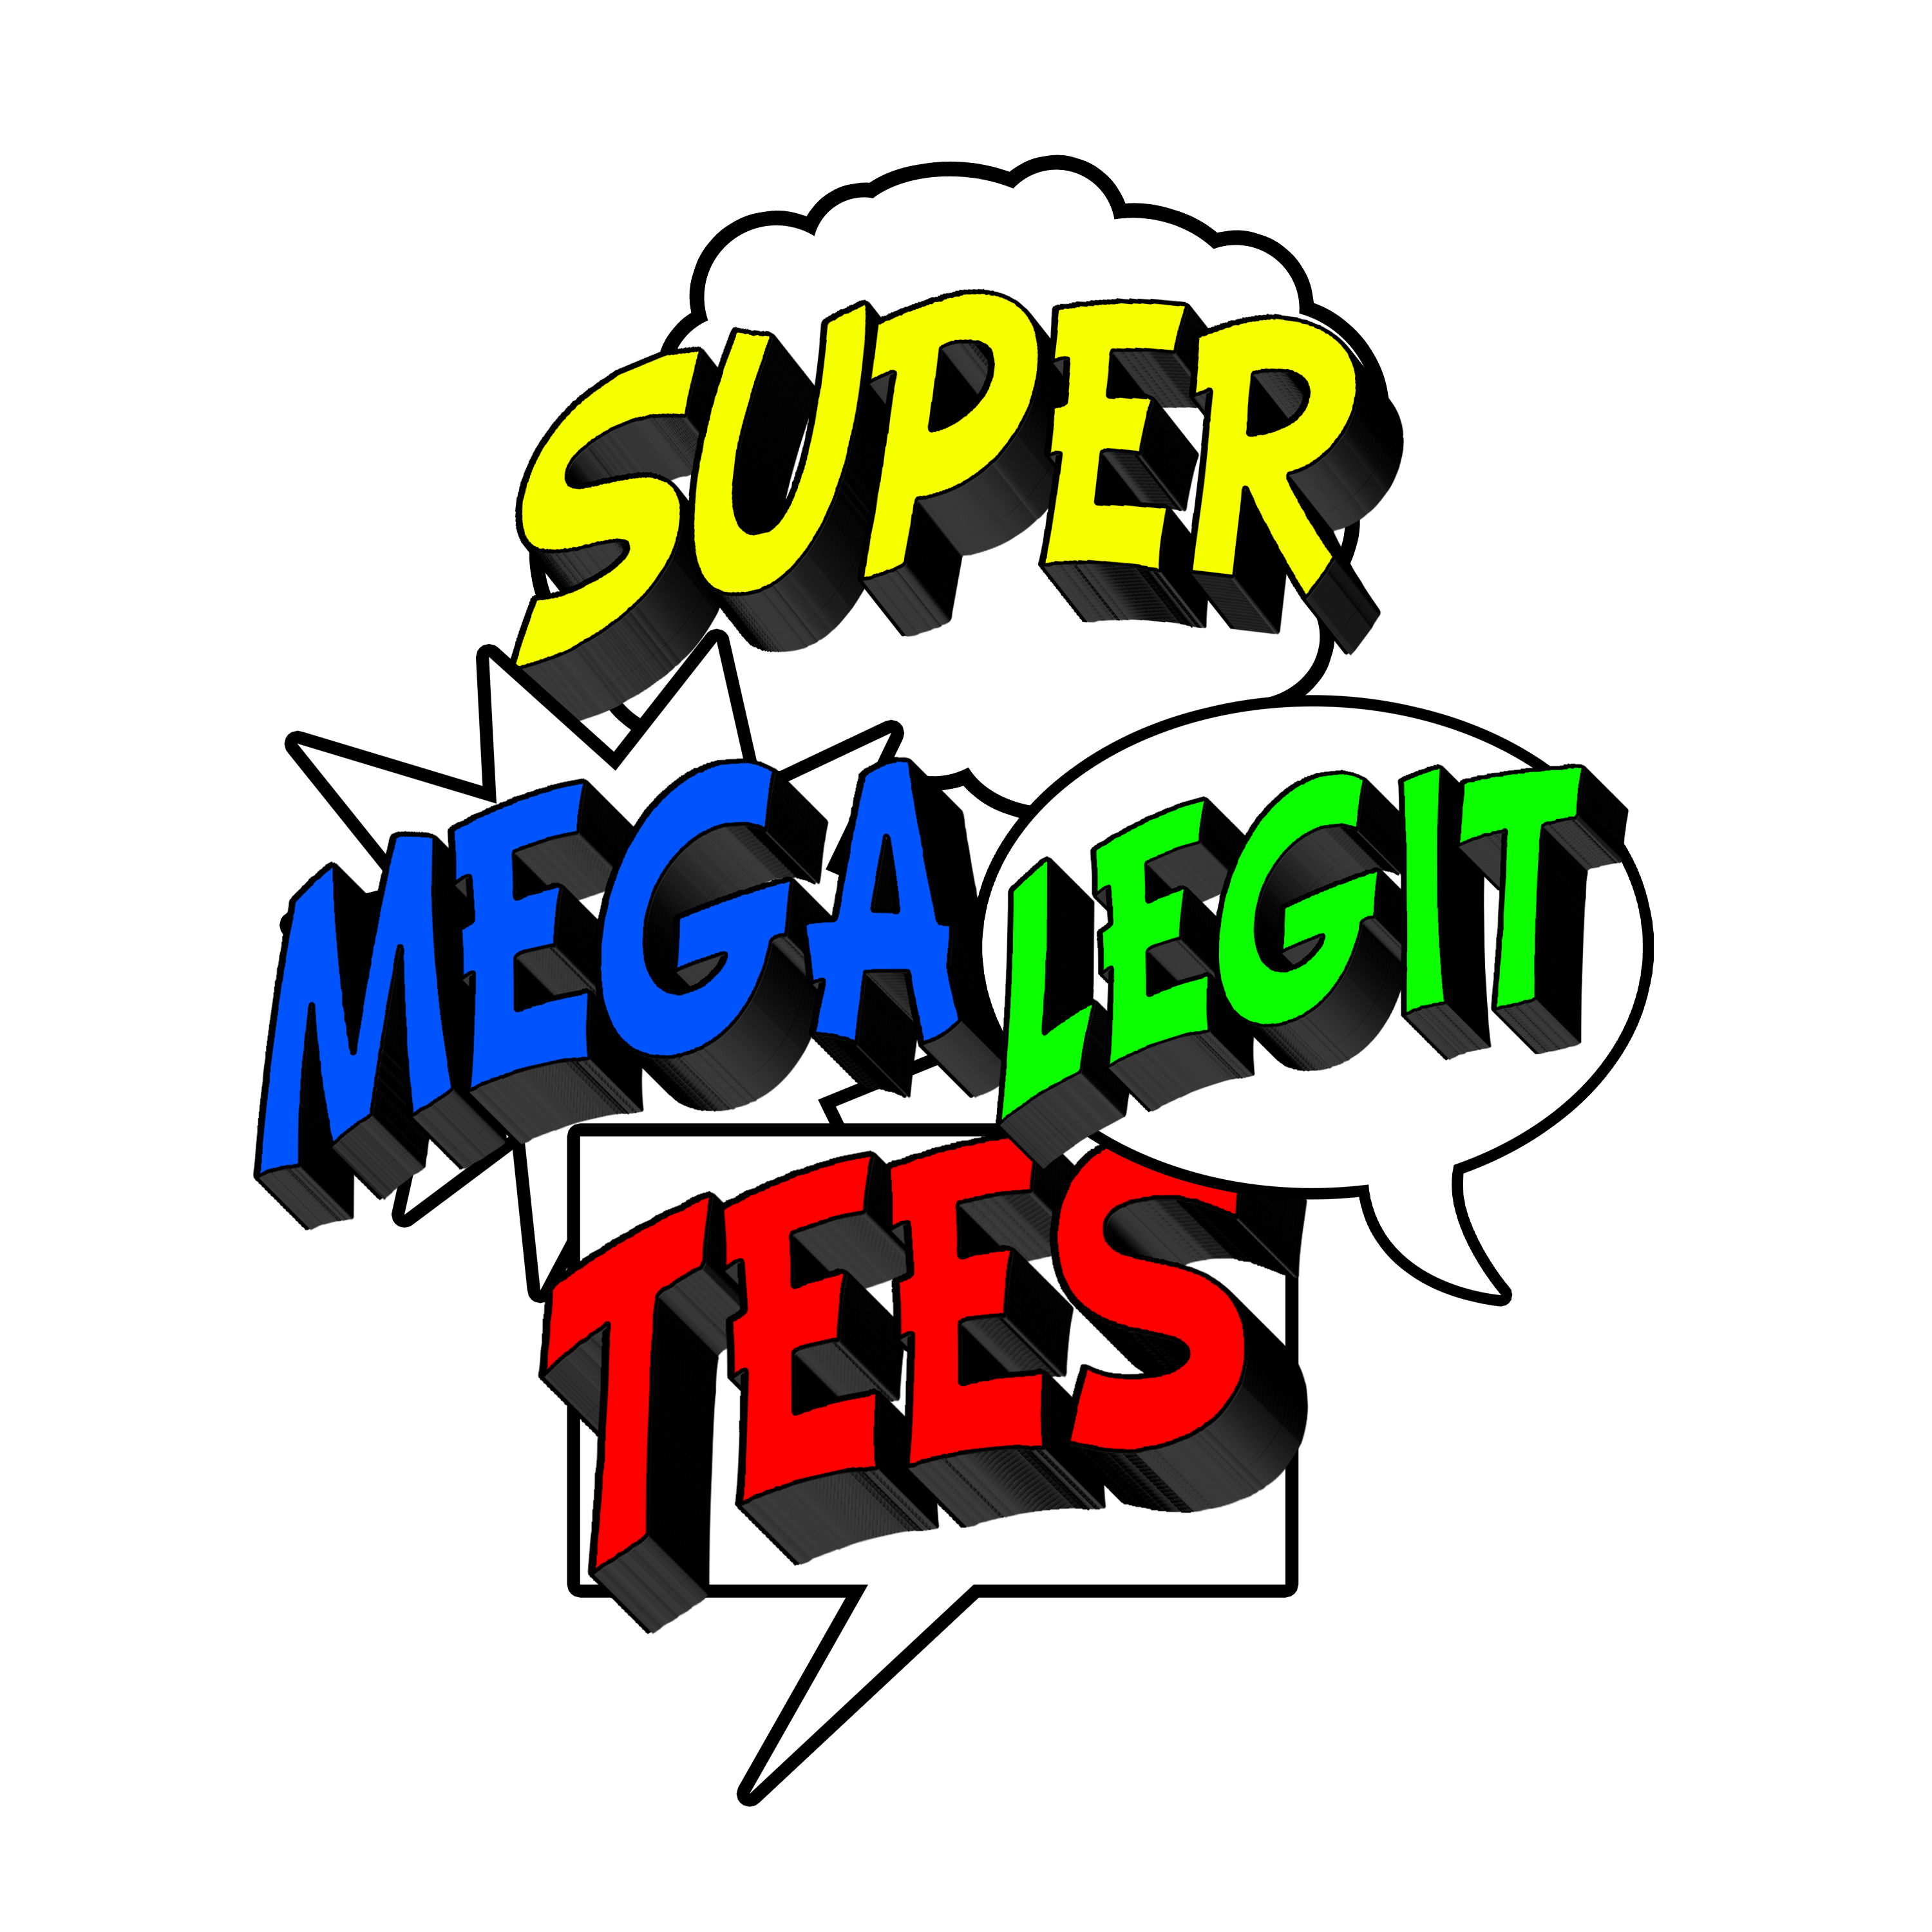 Super Mega Legit Tees